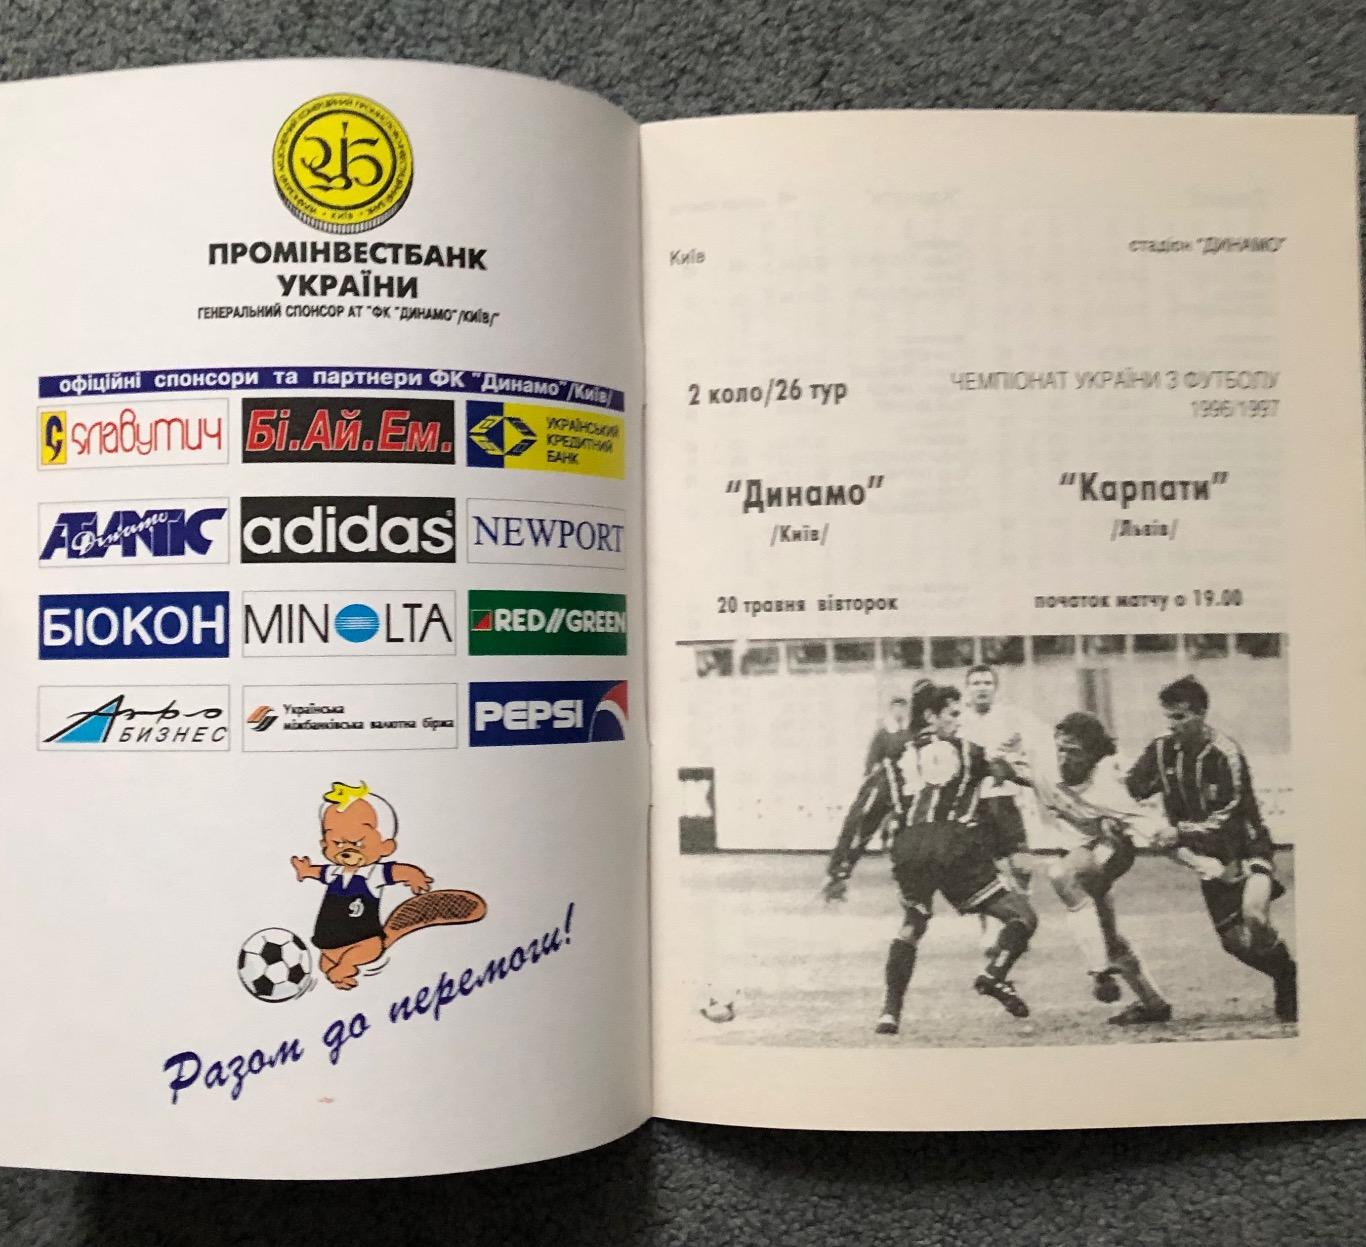 Динамо Киев - Карпаты Львов, 20.05.1997 1